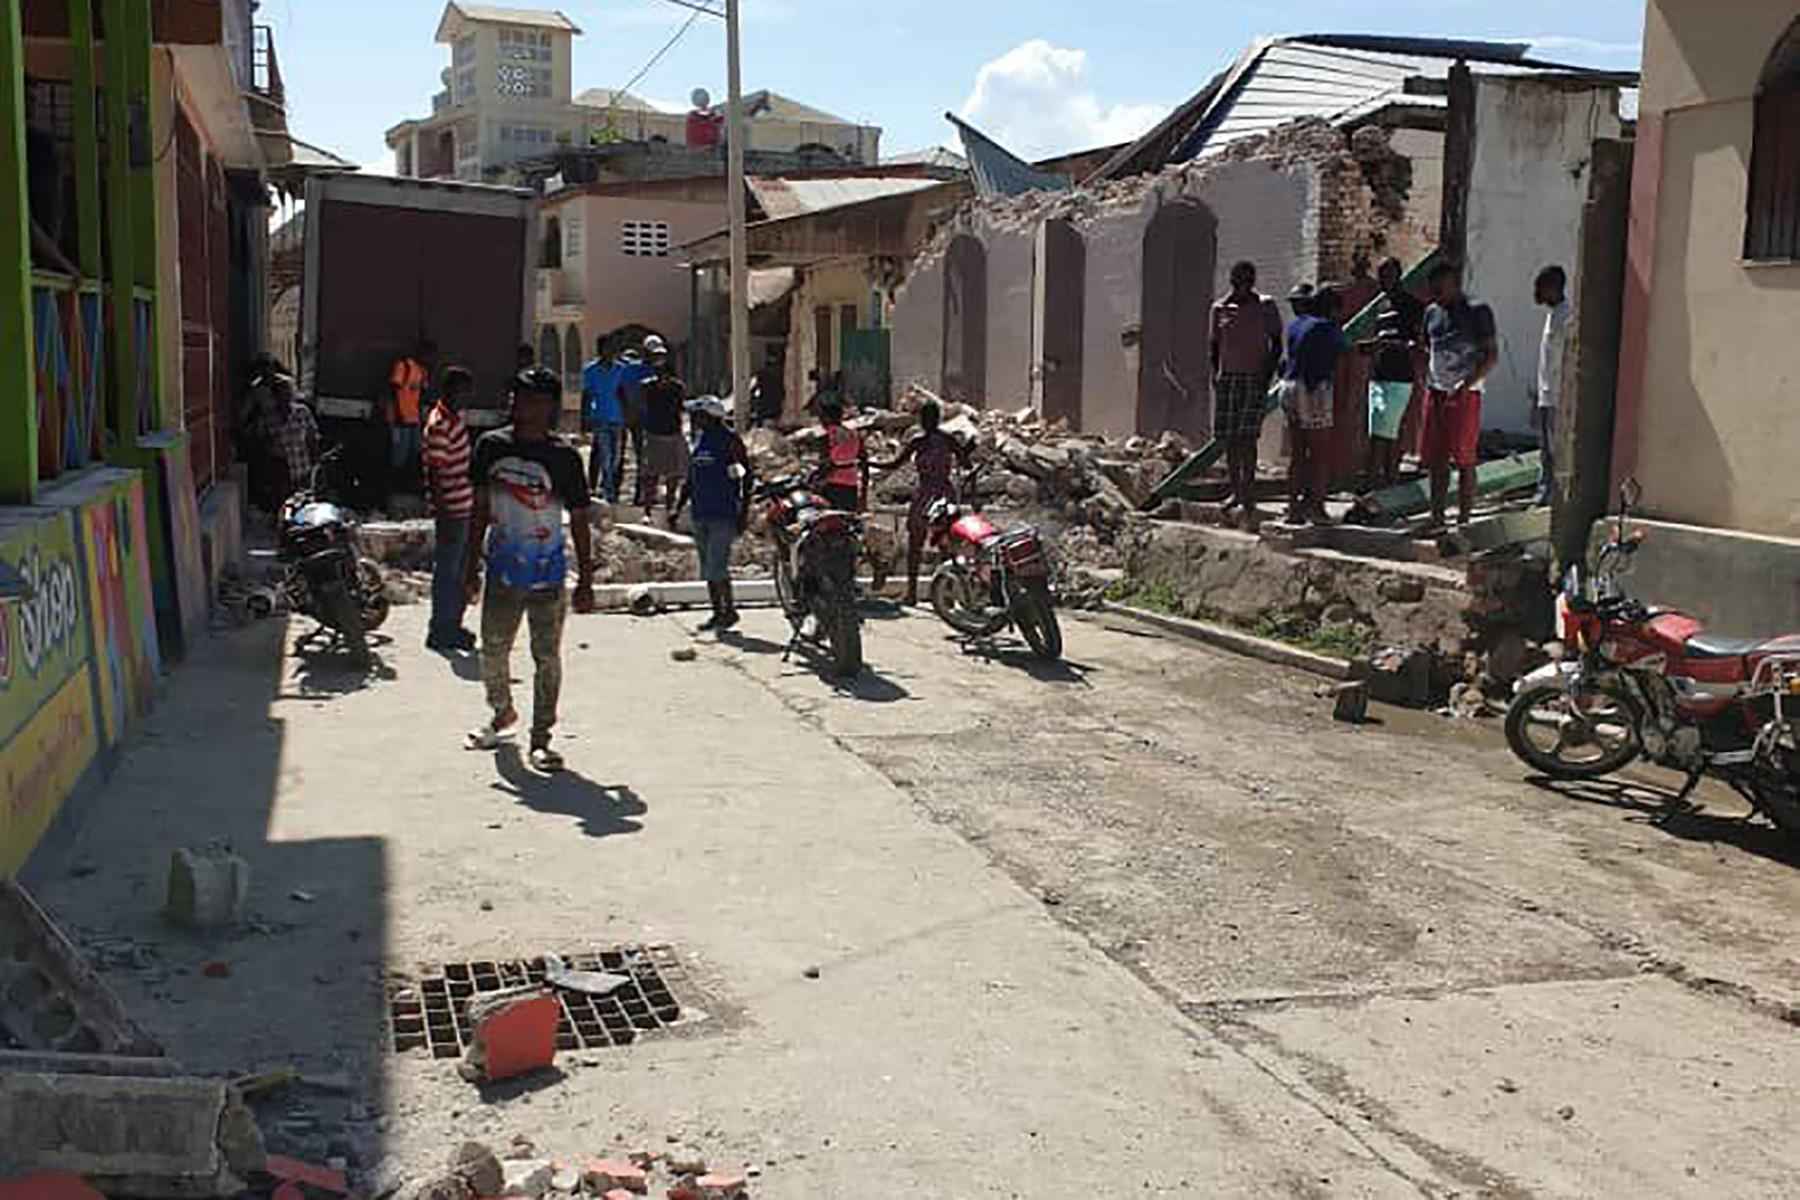 Haiti busca sobreviventes após terremoto que fez mais de 720 mortos - AFP